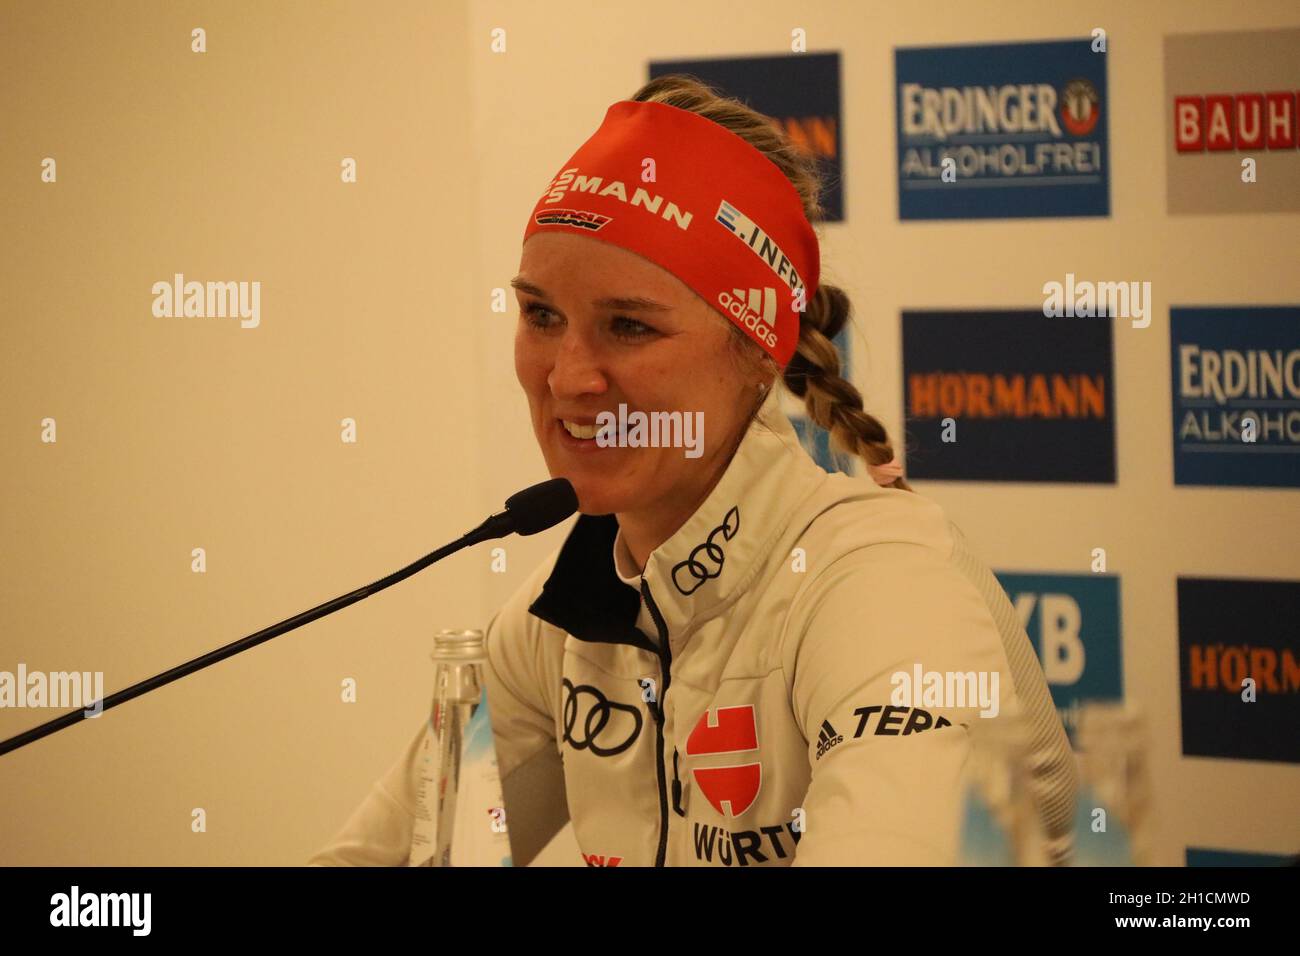 Hatte gut lachen: Denise Herrmann (WSC Erzgebirge Oberwiesenthal) nach WM-Silber im Verfolgungsrennen,  ITA, IBU Biathlon-Weltmeisterschaft Antholz 20 Stock Photo